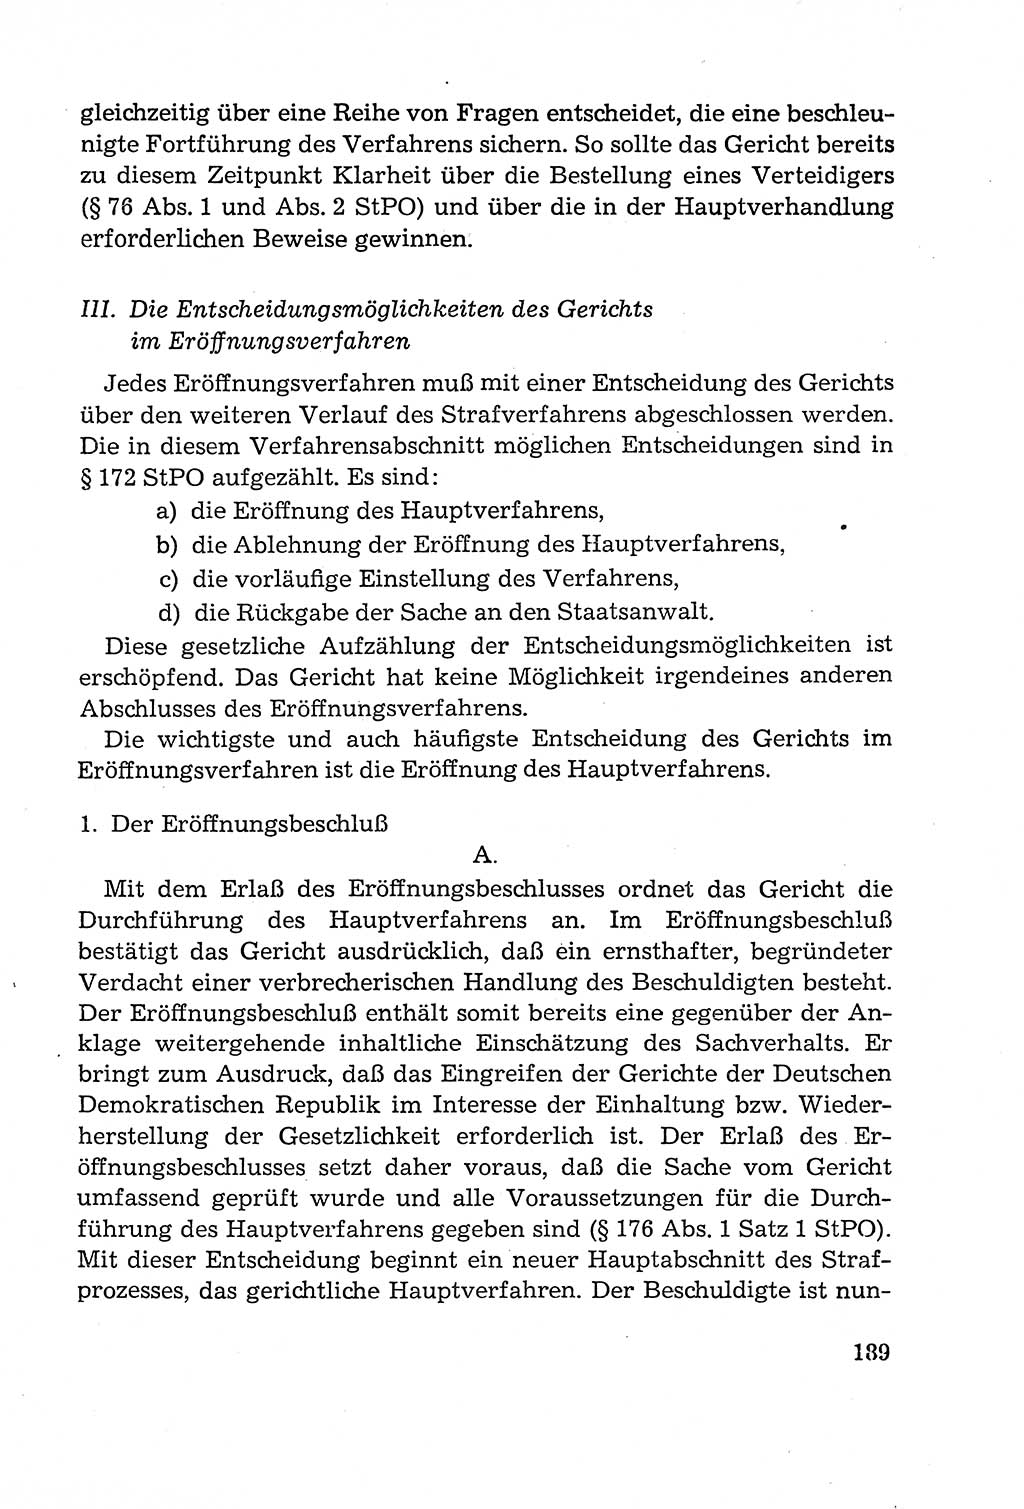 Leitfaden des Strafprozeßrechts der Deutschen Demokratischen Republik (DDR) 1959, Seite 189 (LF StPR DDR 1959, S. 189)